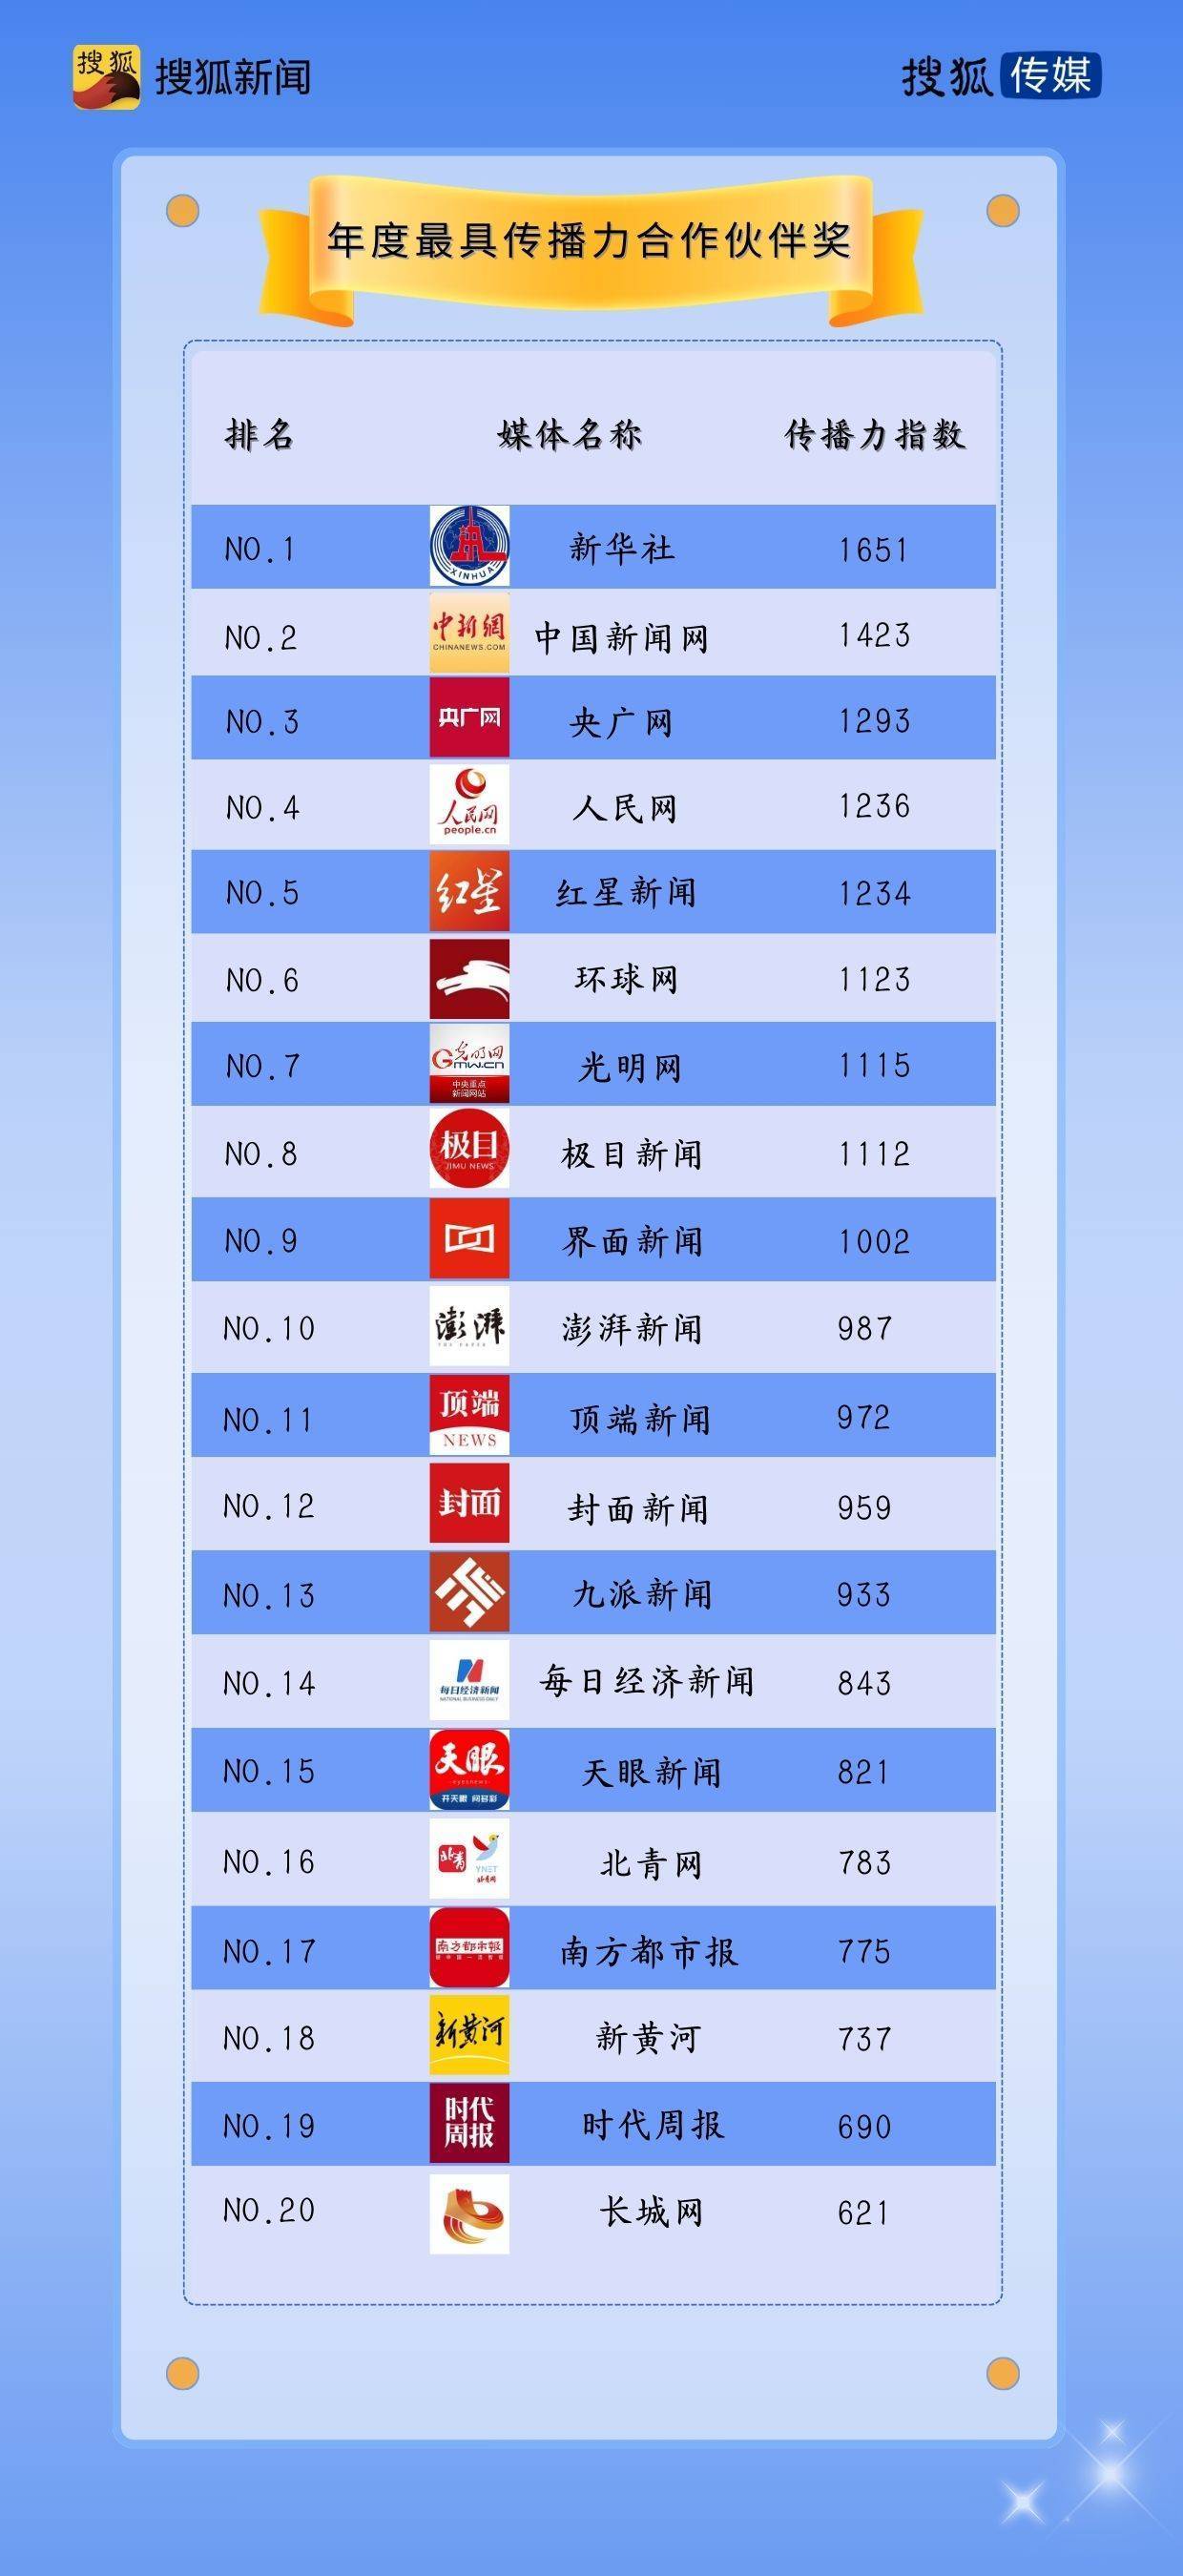 手机搜狐最新图片新闻搜狐独家网络版清明上河图搜狐新闻